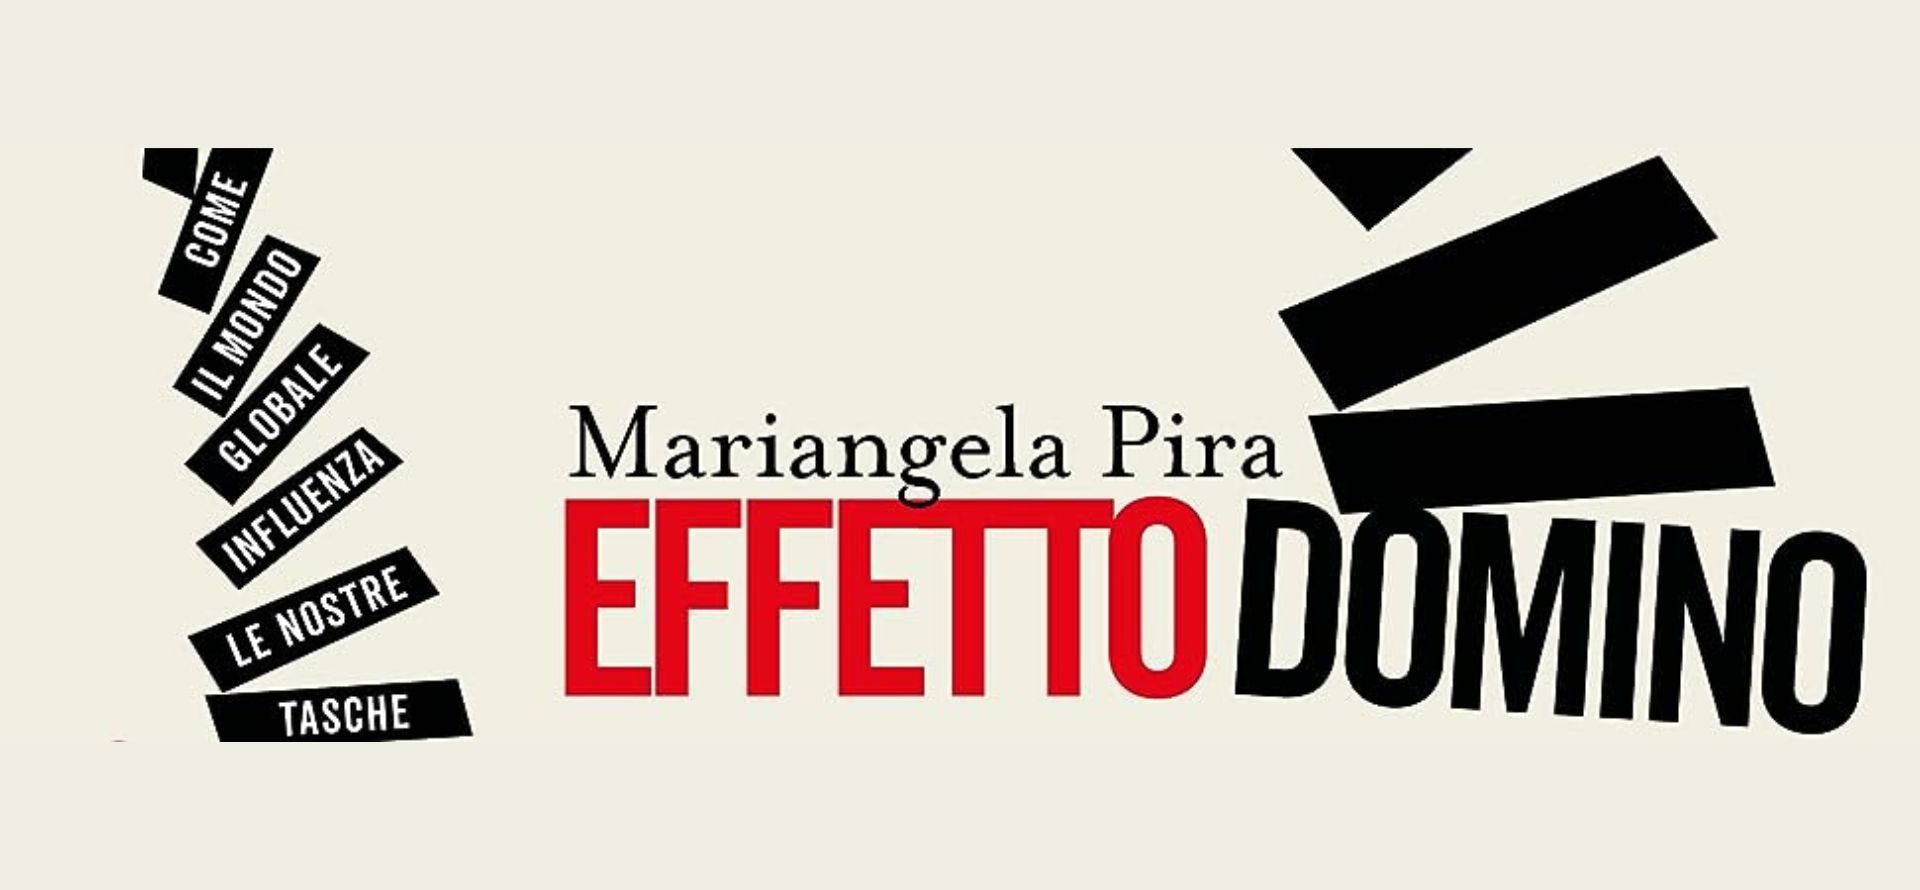 Incontro con l’Autore - Mariangela Pira presenta Effetto Domino